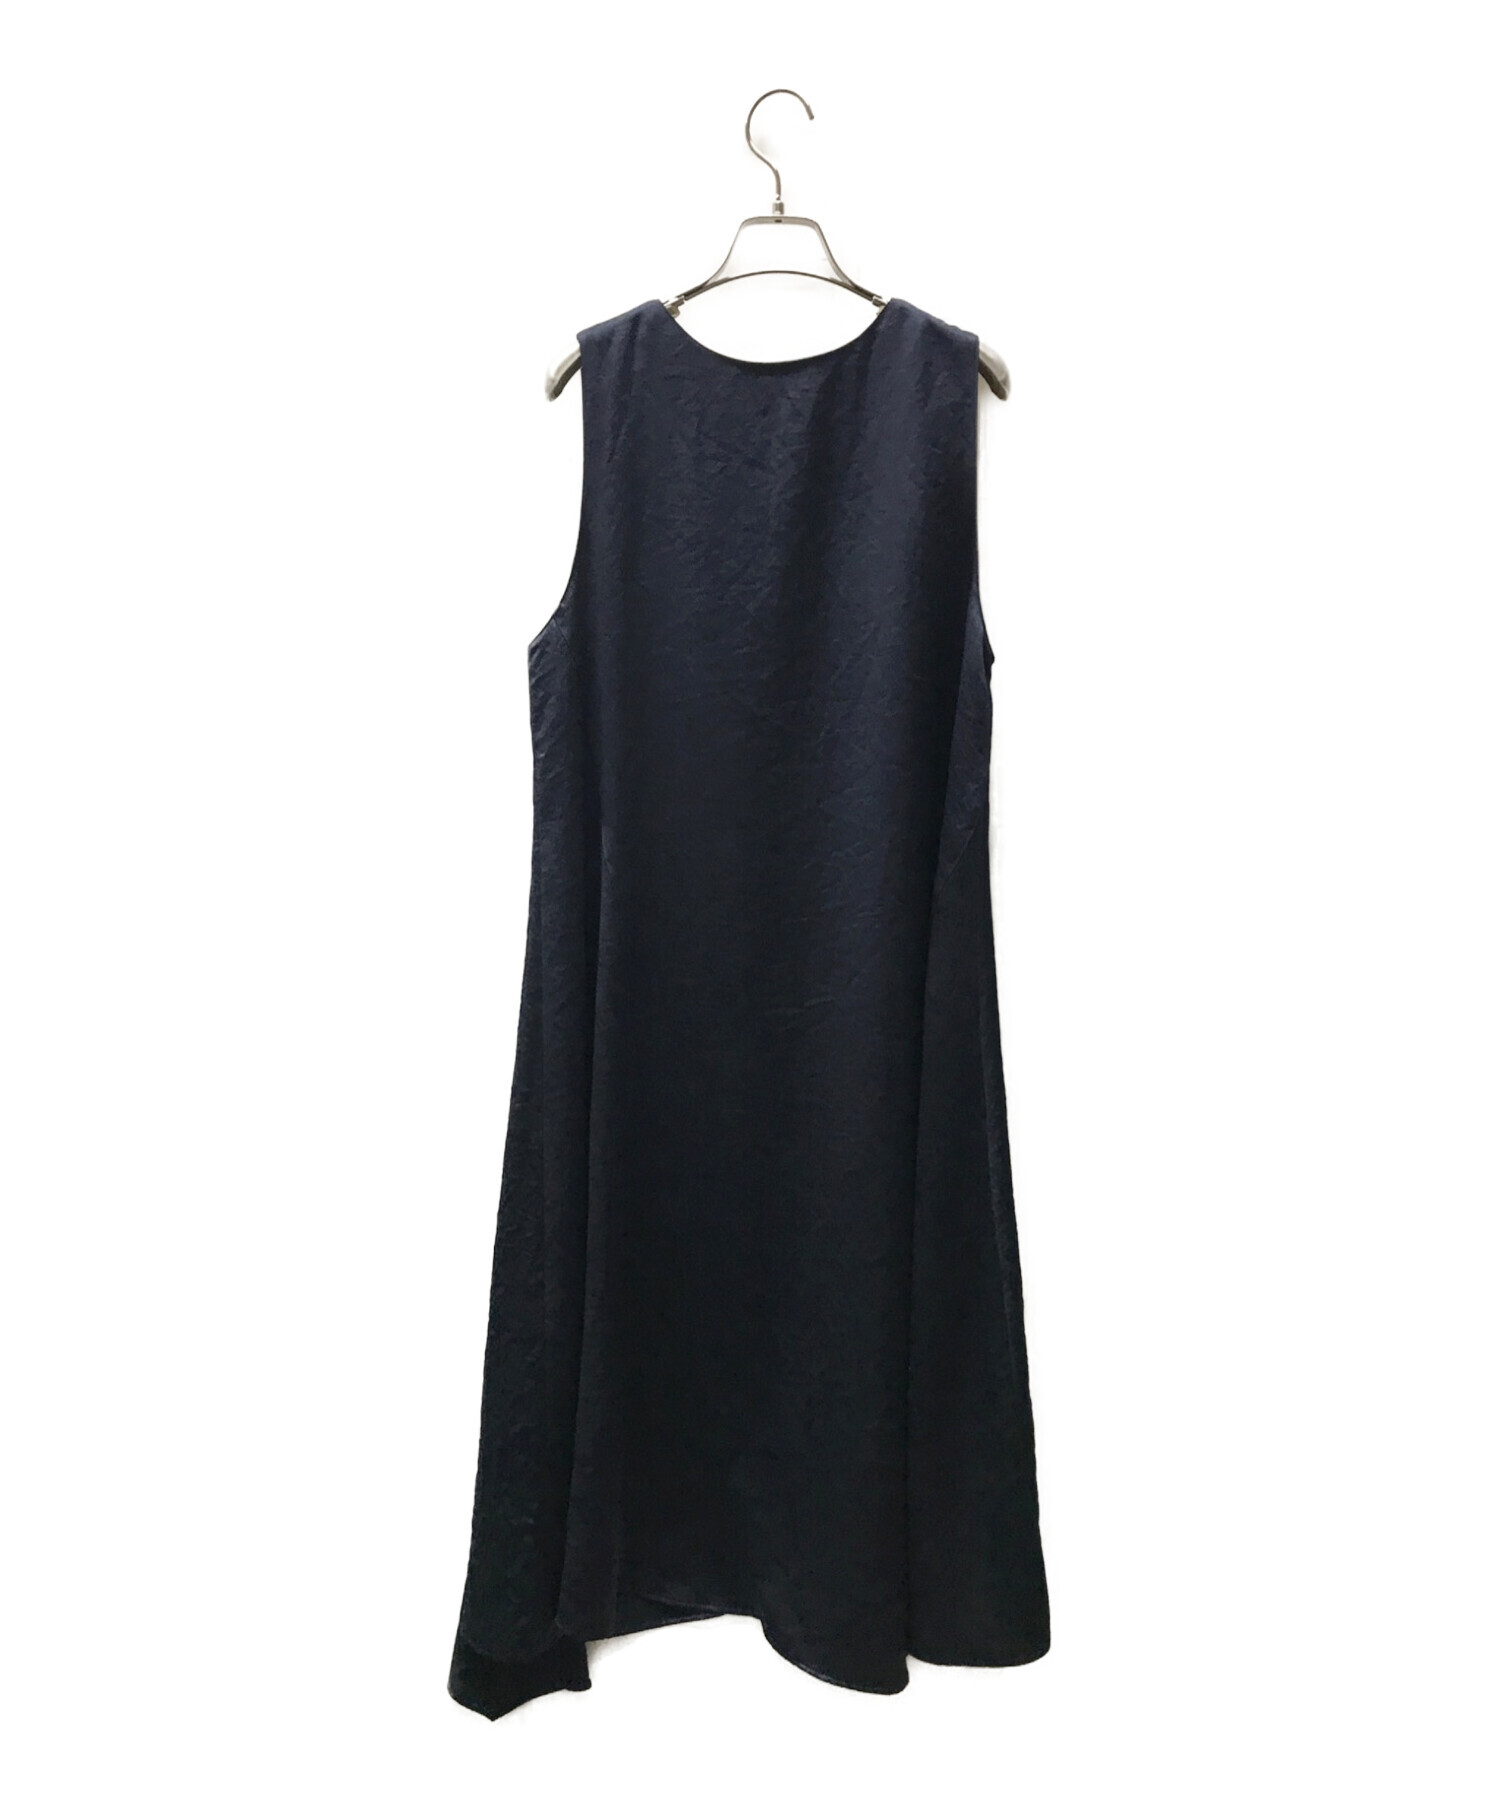 HIROKO BIS (ヒロコビス) ィンテージサテンジャンパースカート ブラック サイズ:9